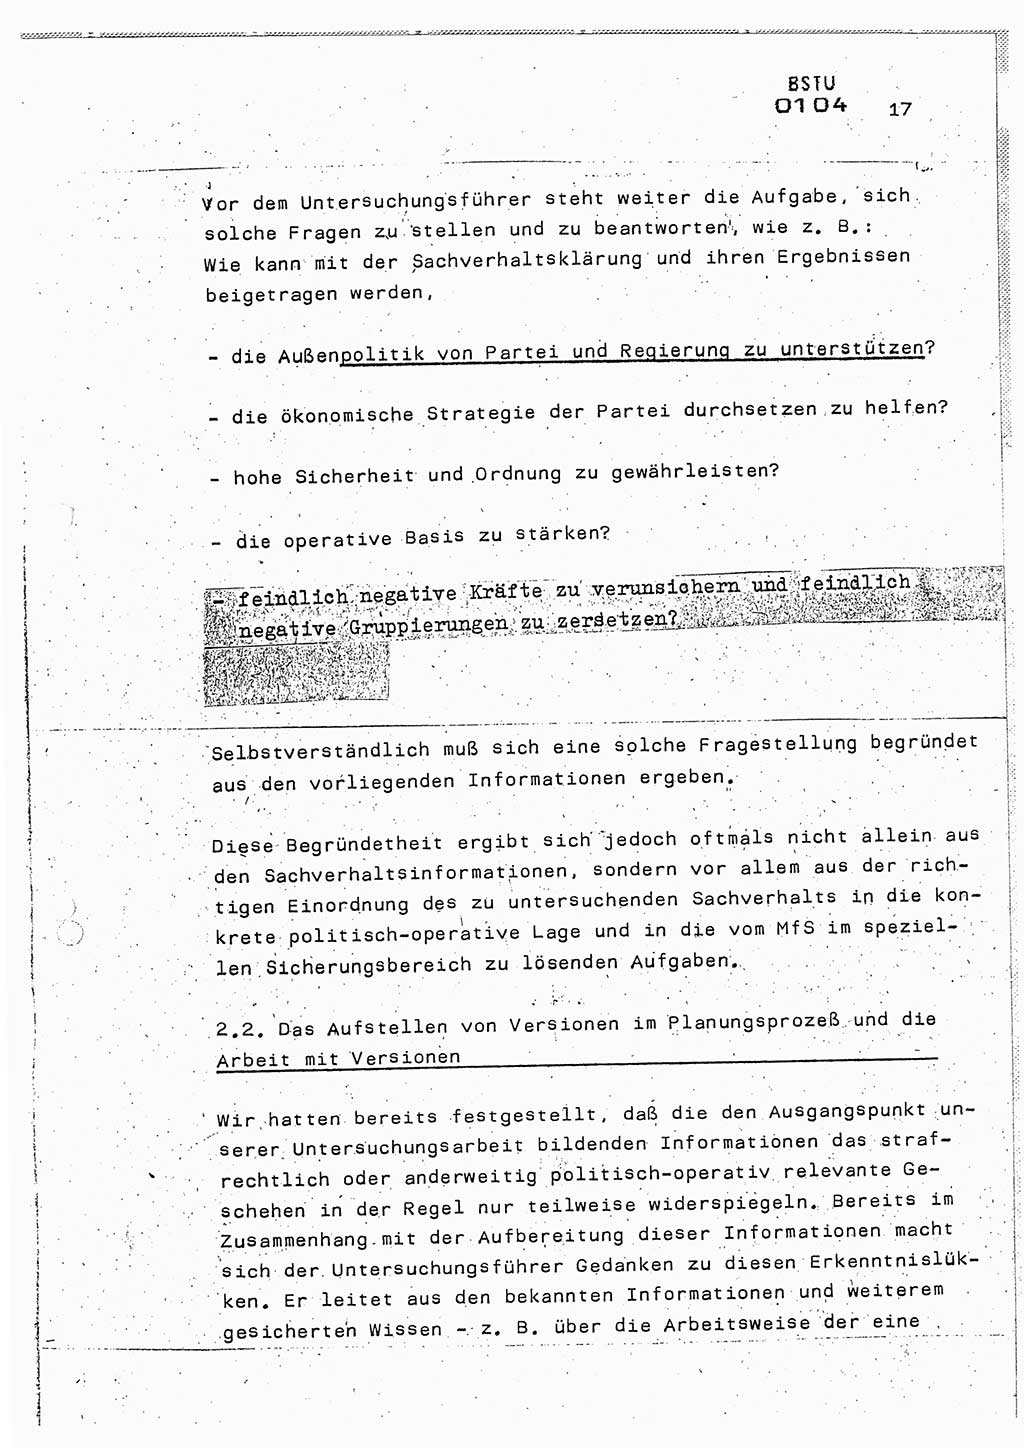 Lektion Ministerium für Staatssicherheit (MfS) [Deutsche Demokratische Republik (DDR)], Hauptabteilung (HA) Ⅸ, Berlin 1987, Seite 17 (Lekt. Pln. Bearb. EV MfS DDR HA Ⅸ /87 1987, S. 17)